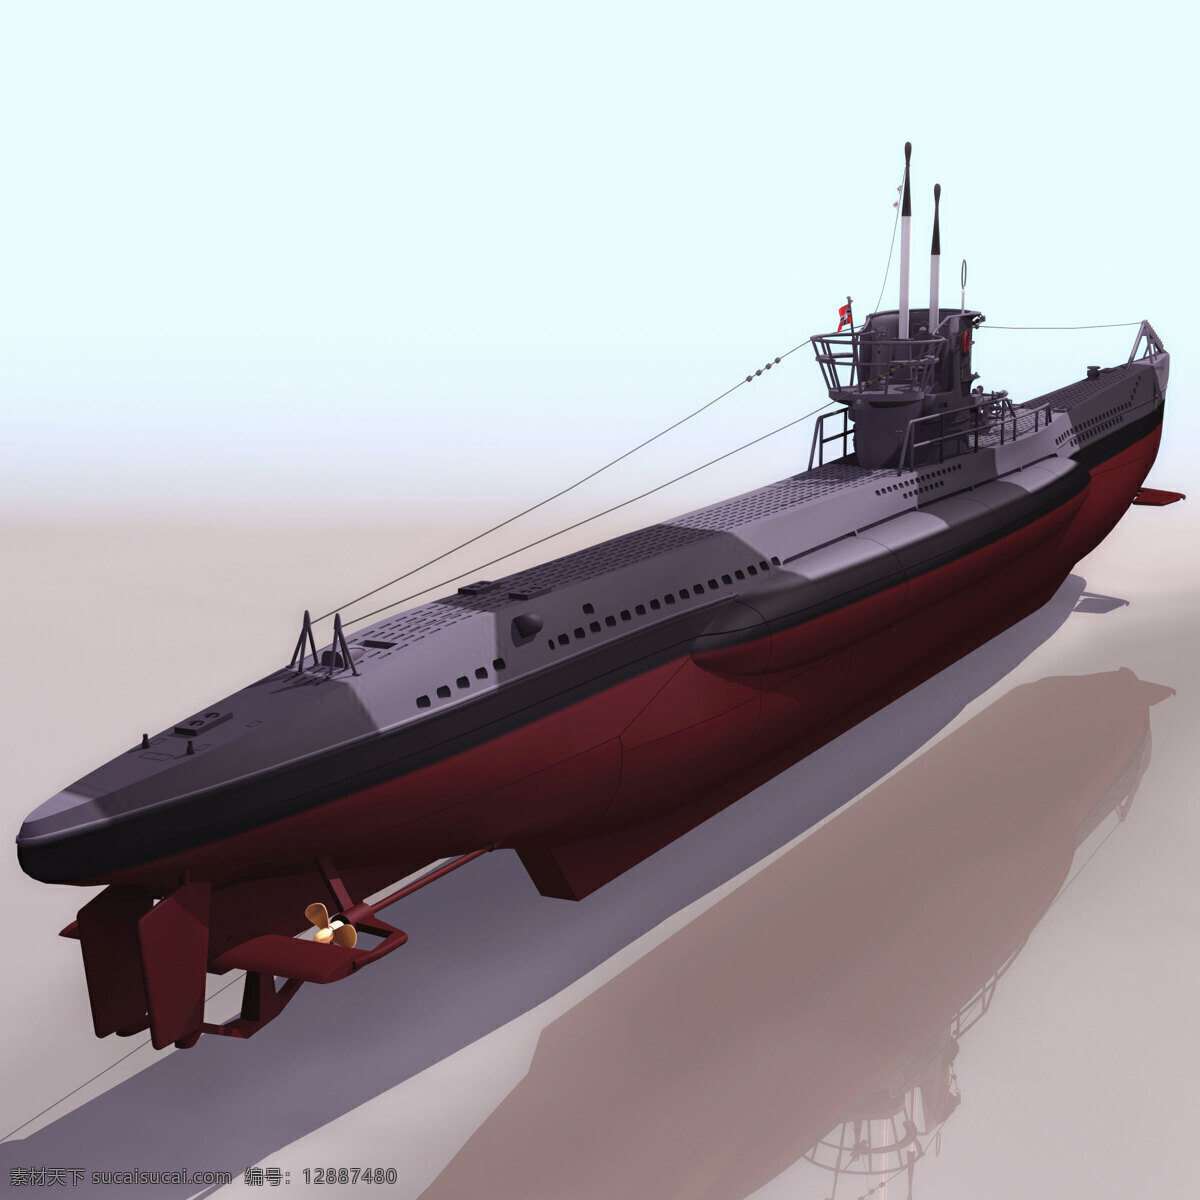 船模型09 type7b 军事模型 船模型 海军武器库 3d模型素材 其他3d模型